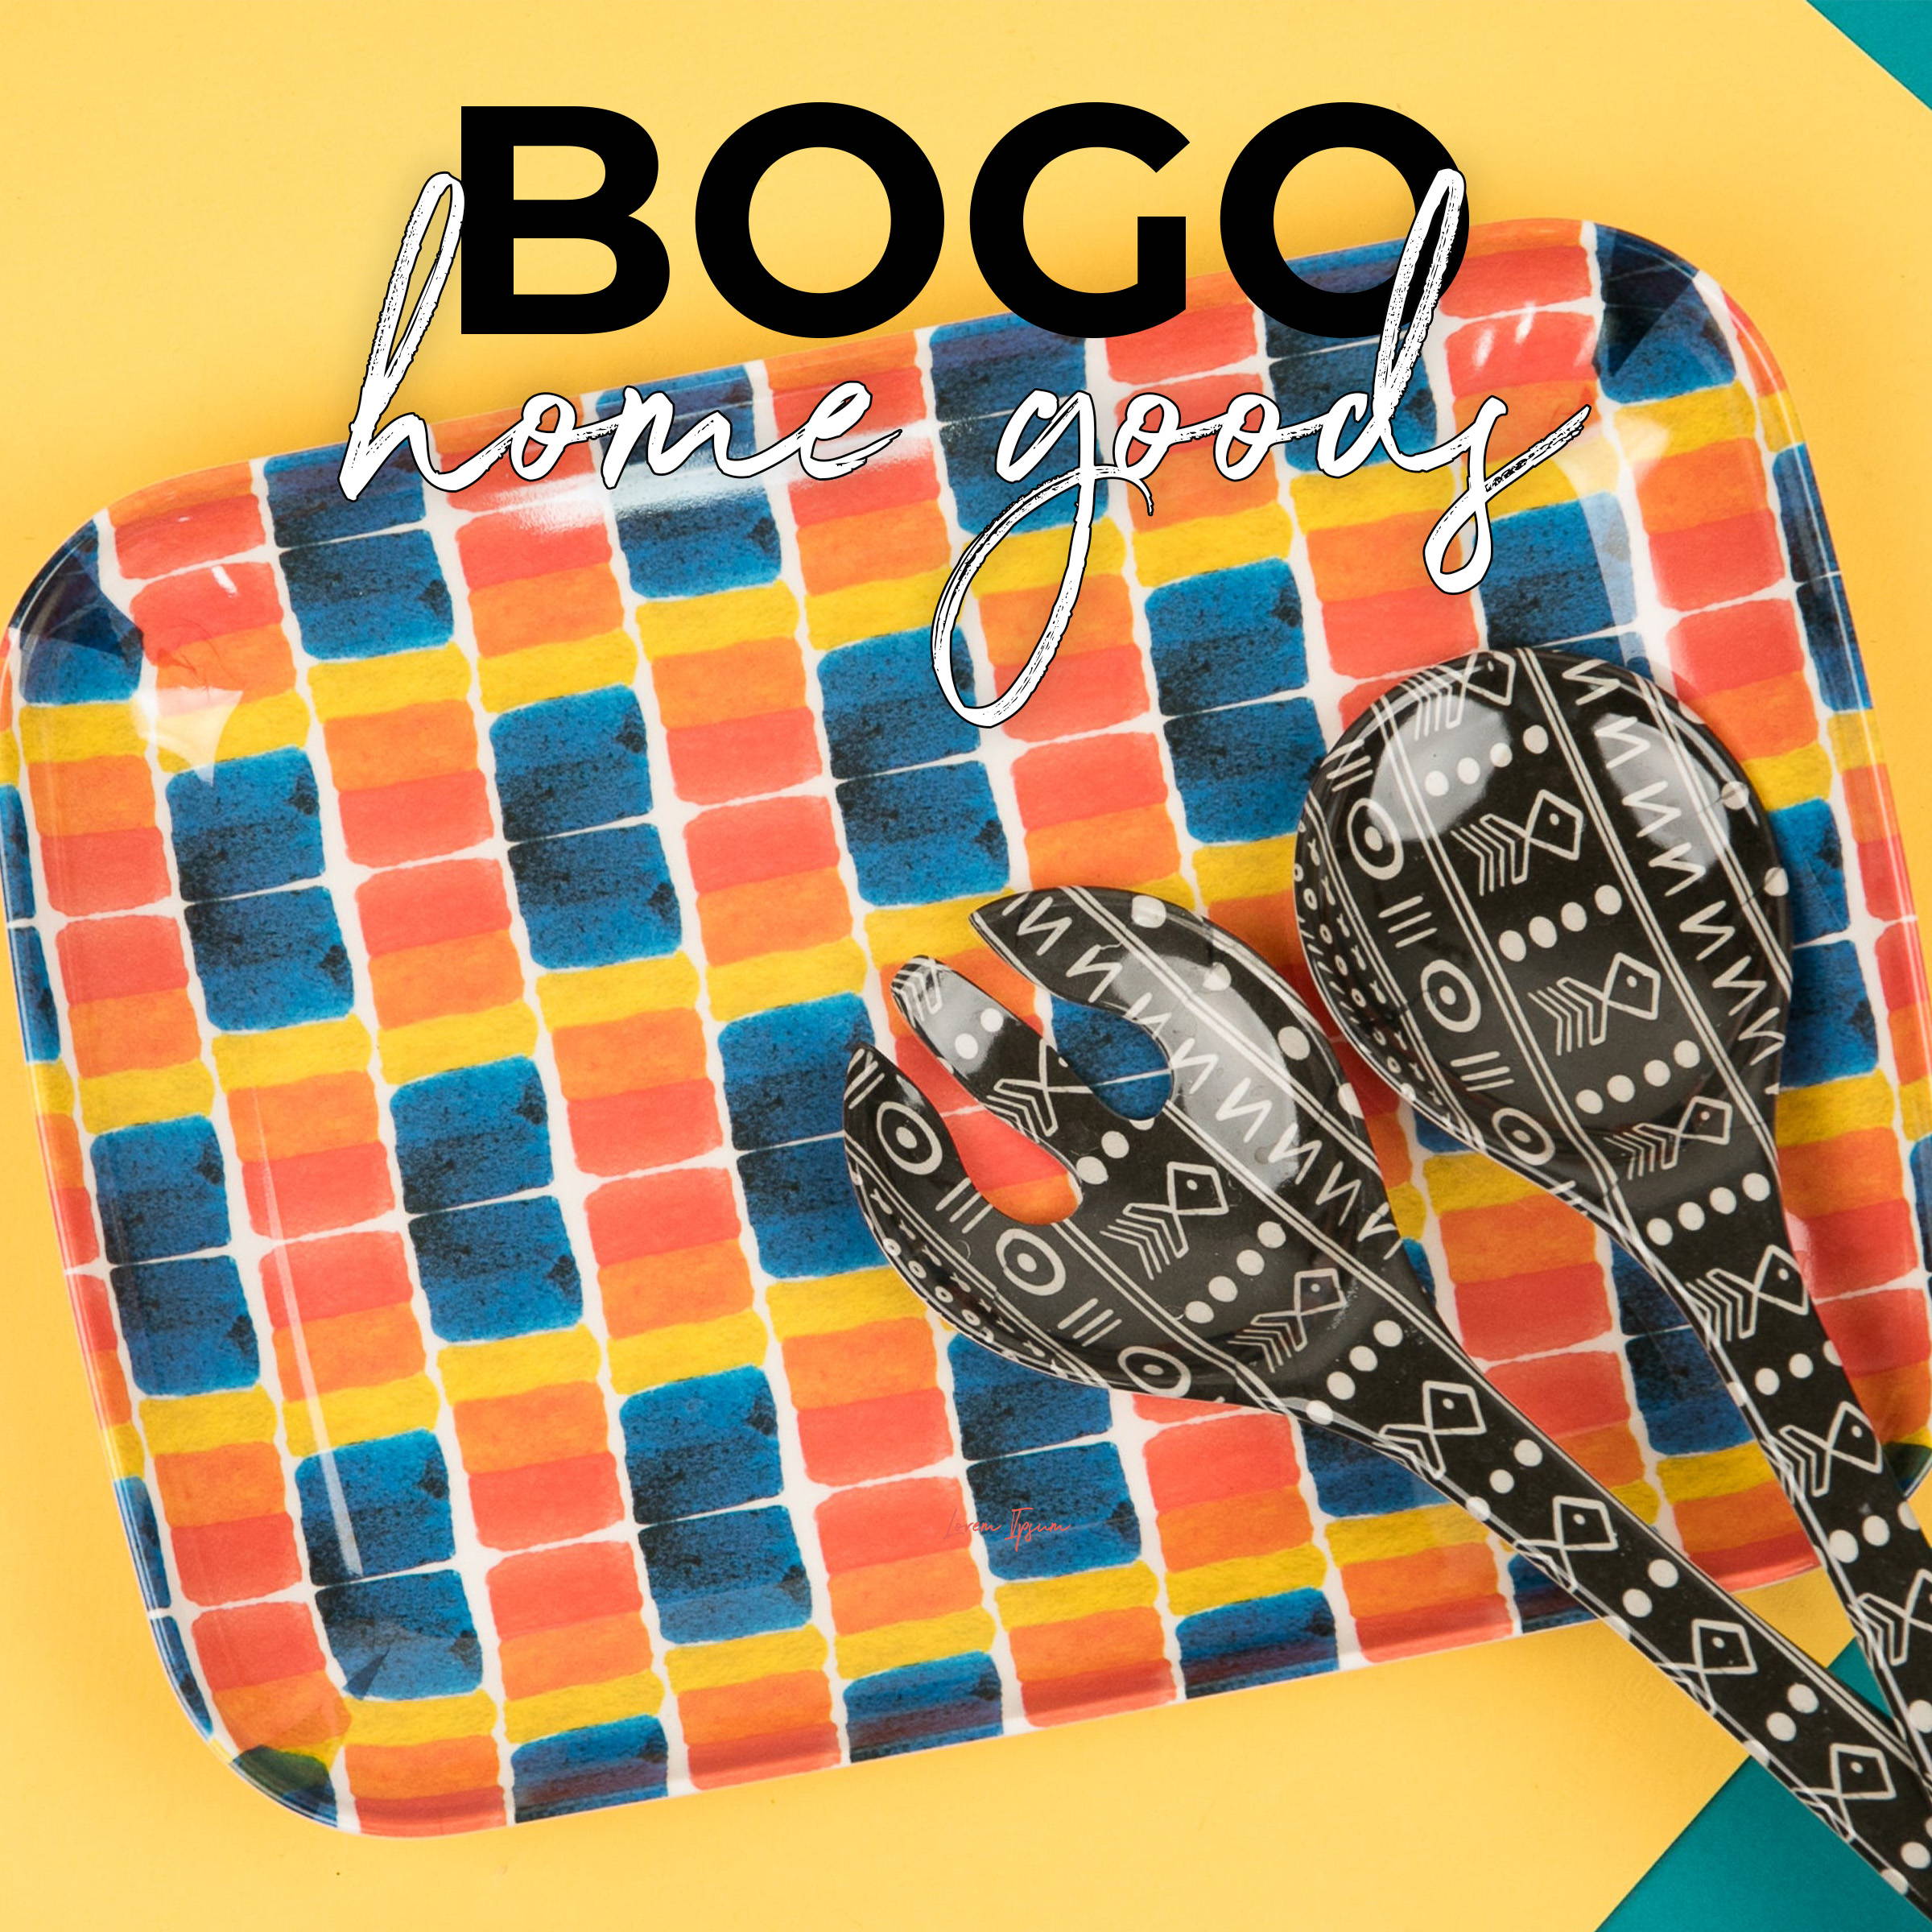 BOGO Home - Buy 1 Get 1 FREE 